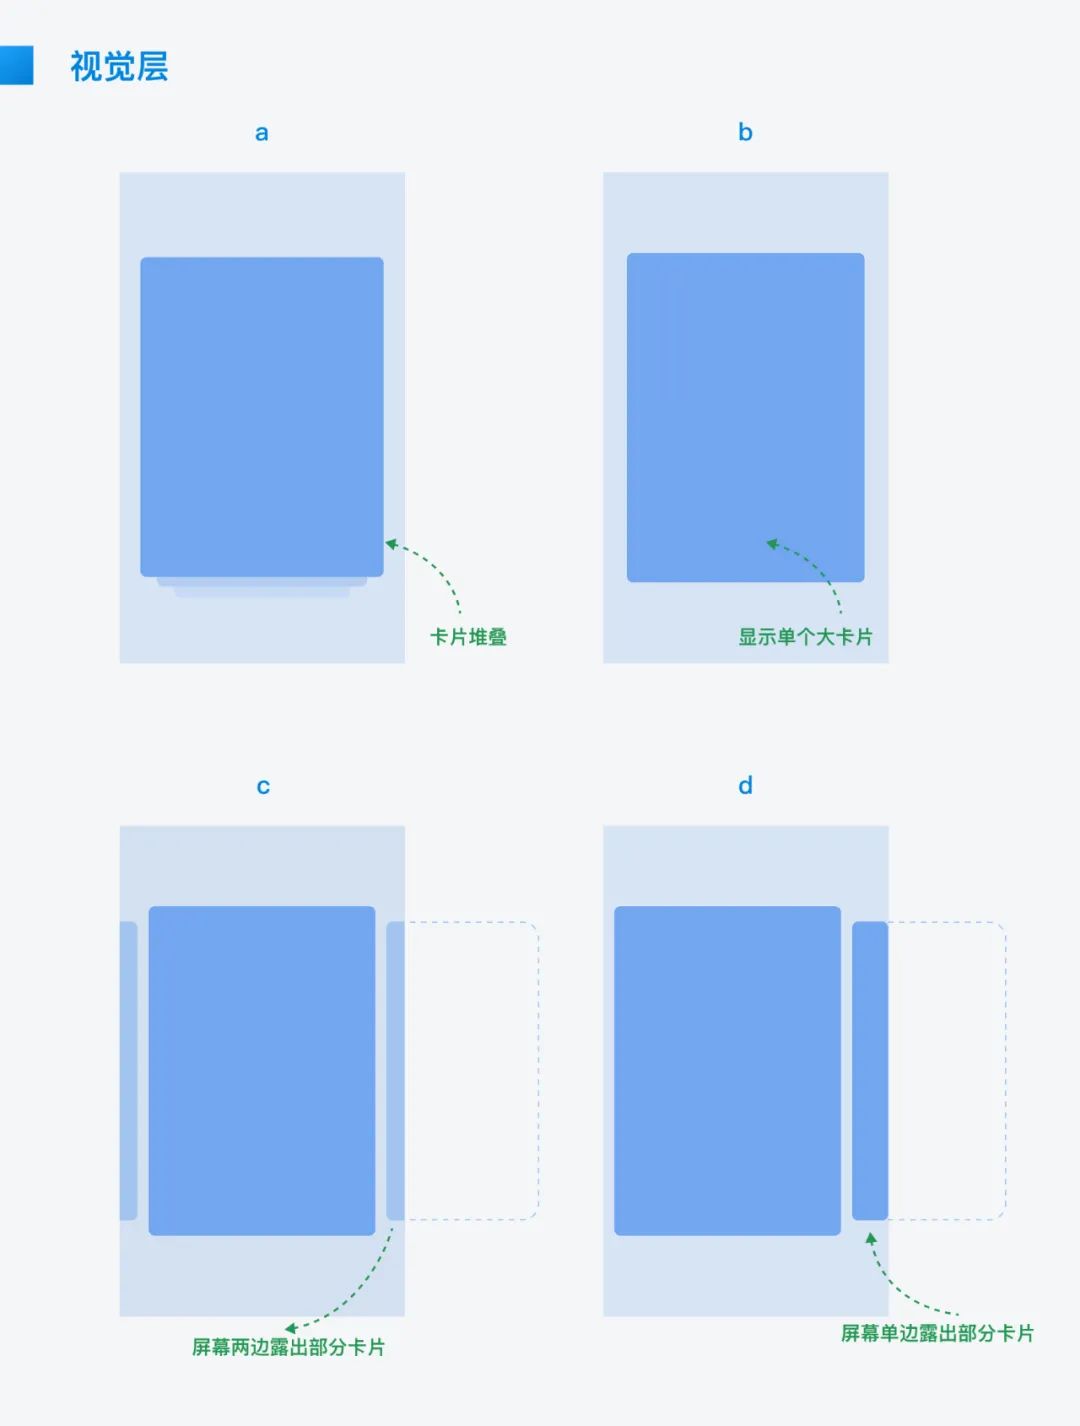 提升屏幕空间利用率的 6 种设计方式(二)：卡片设计法